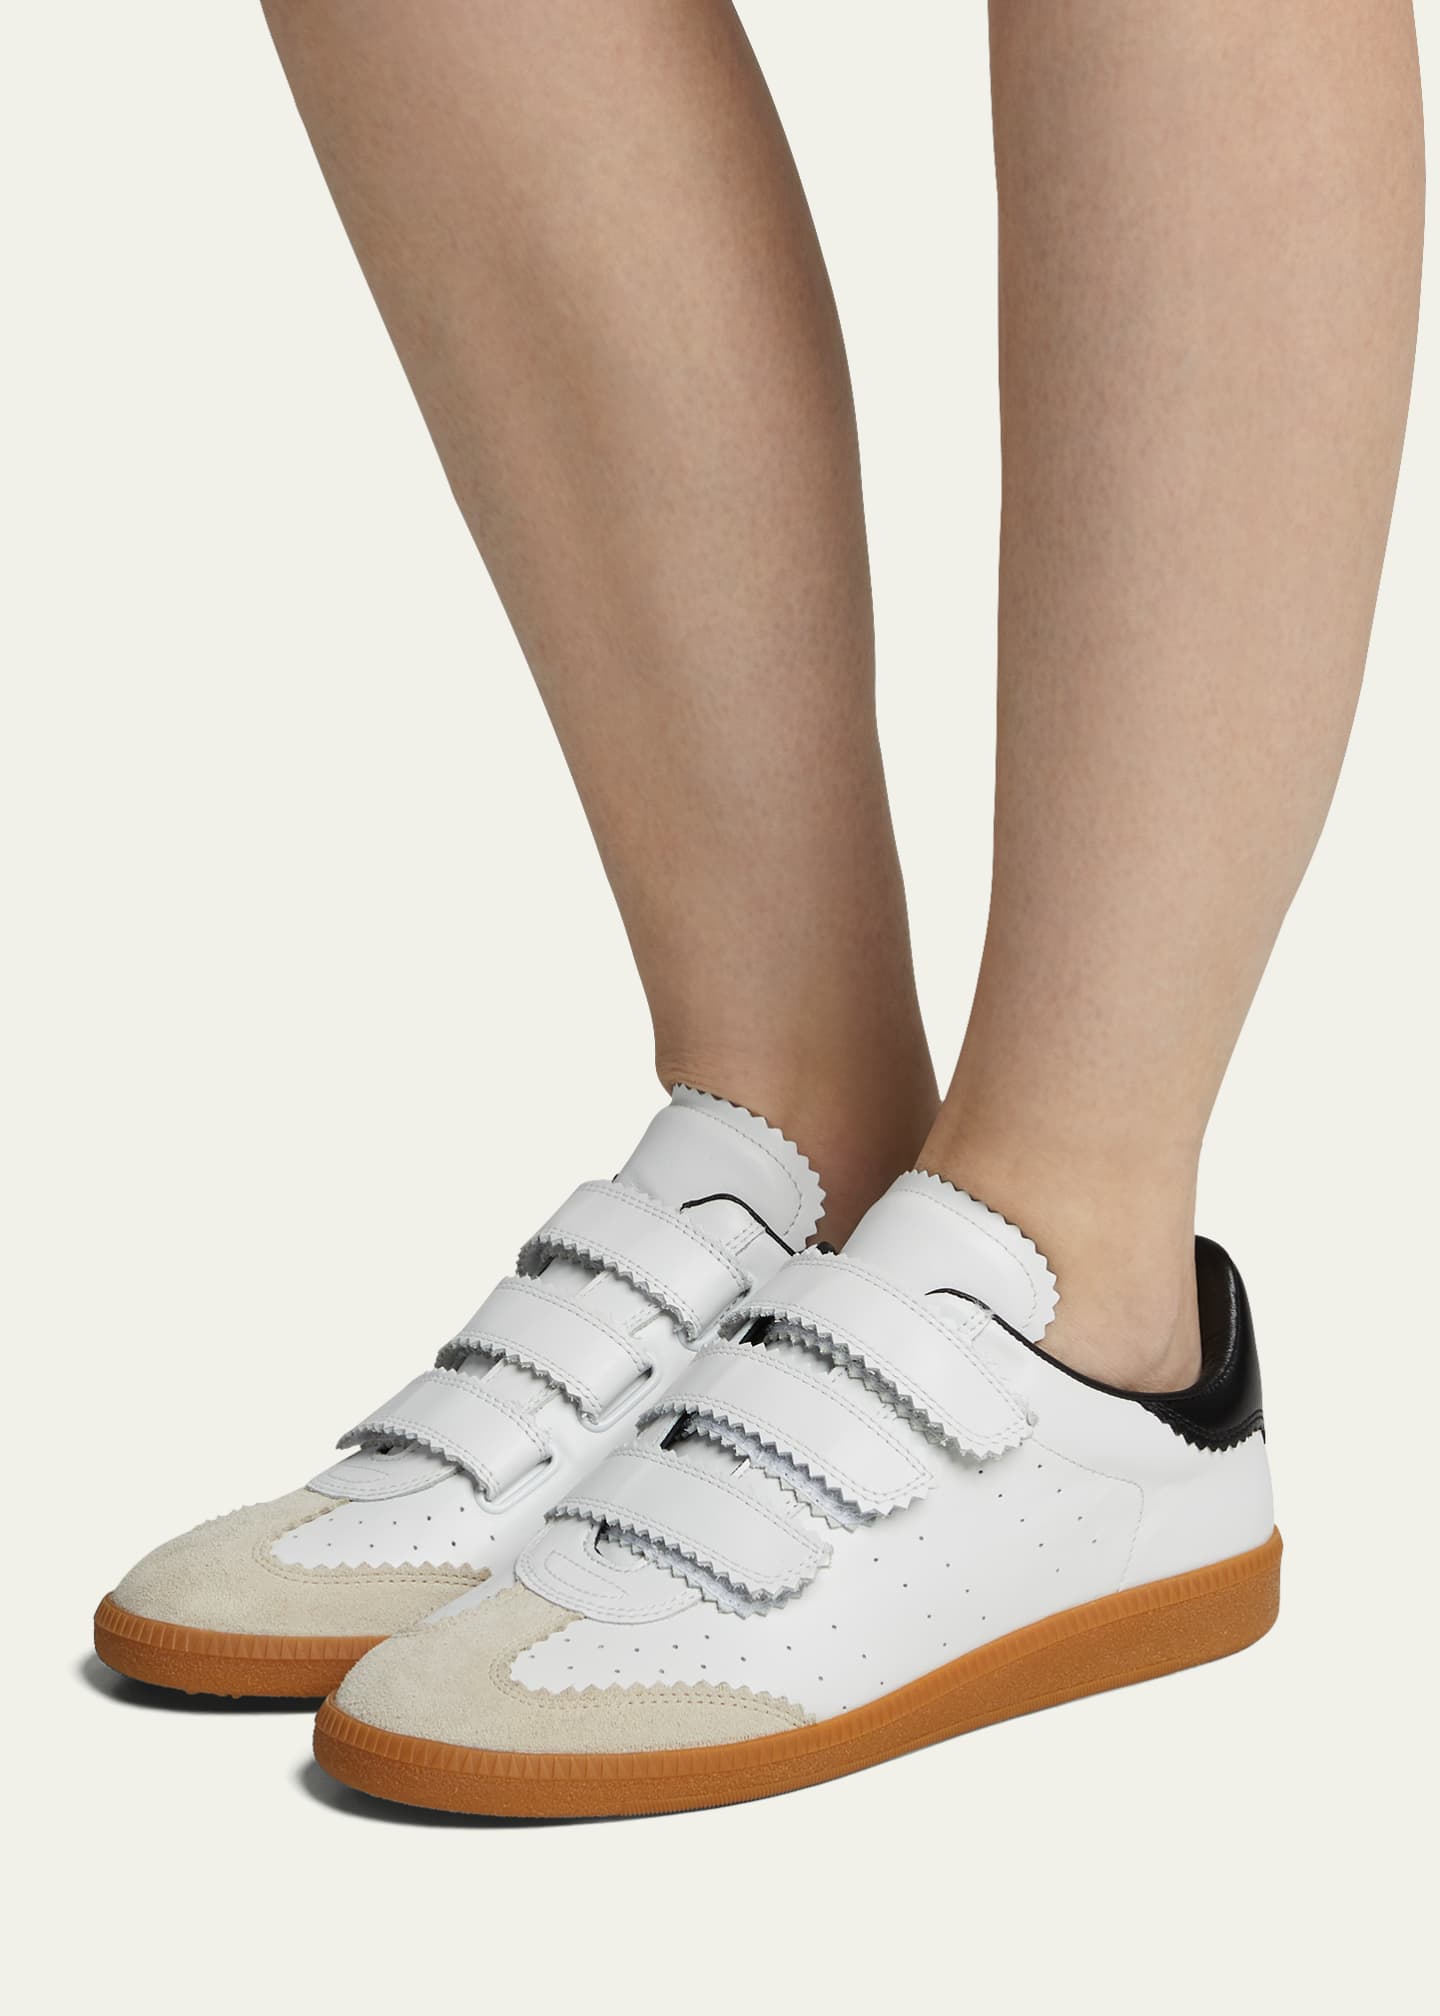 naaien Minachting Ga naar het circuit Isabel Marant Beth Grip Strap Sneakers - Bergdorf Goodman